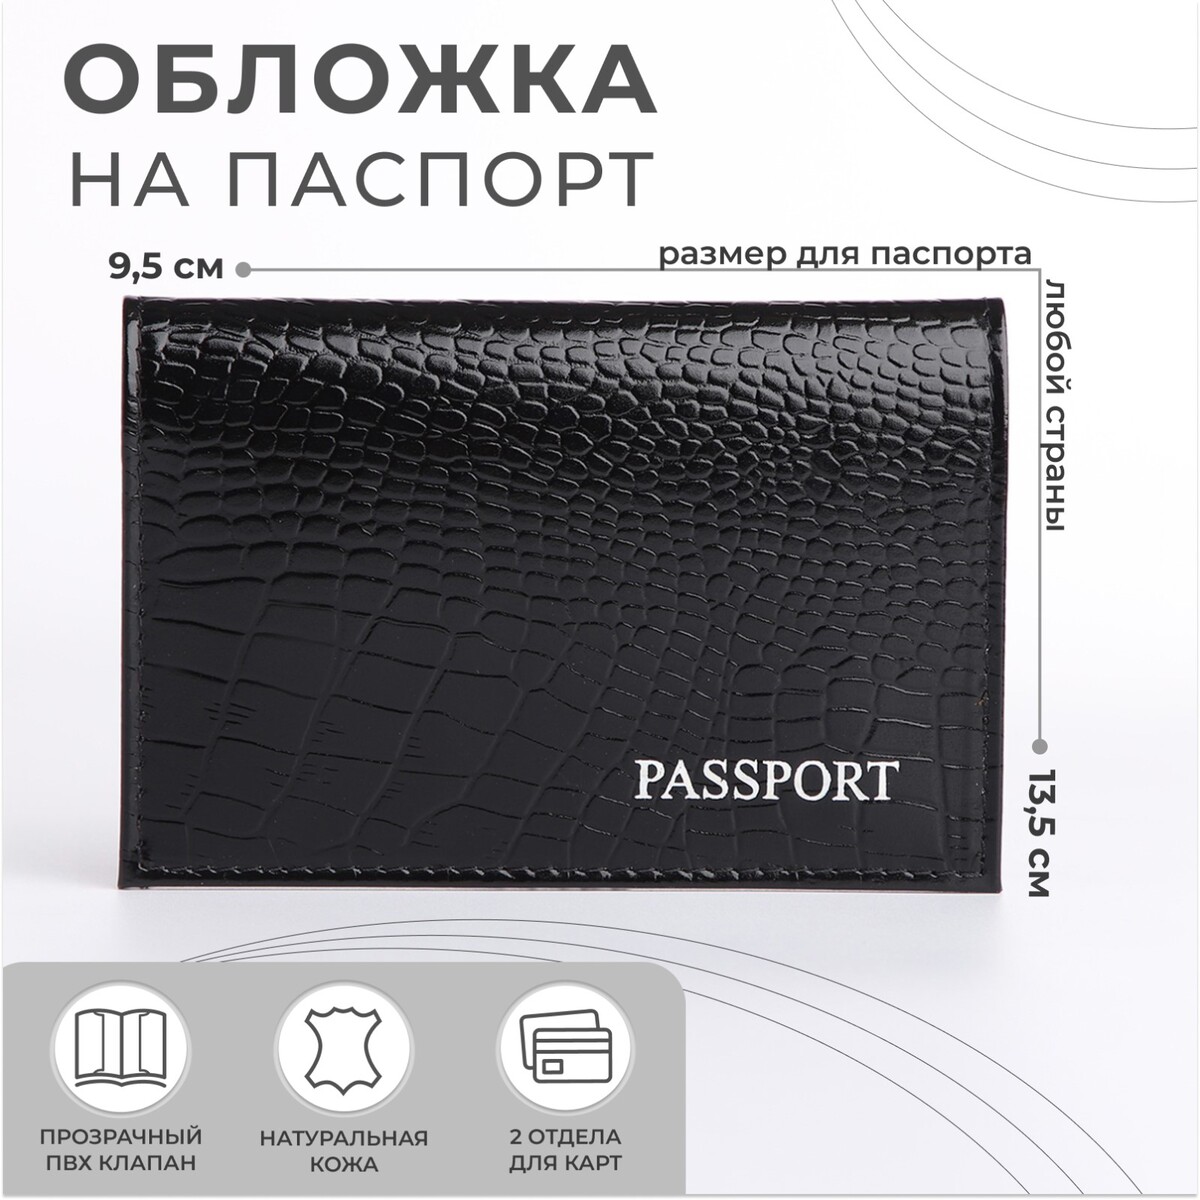 Обложка для паспорта, тиснение, крокодил, цвет черный